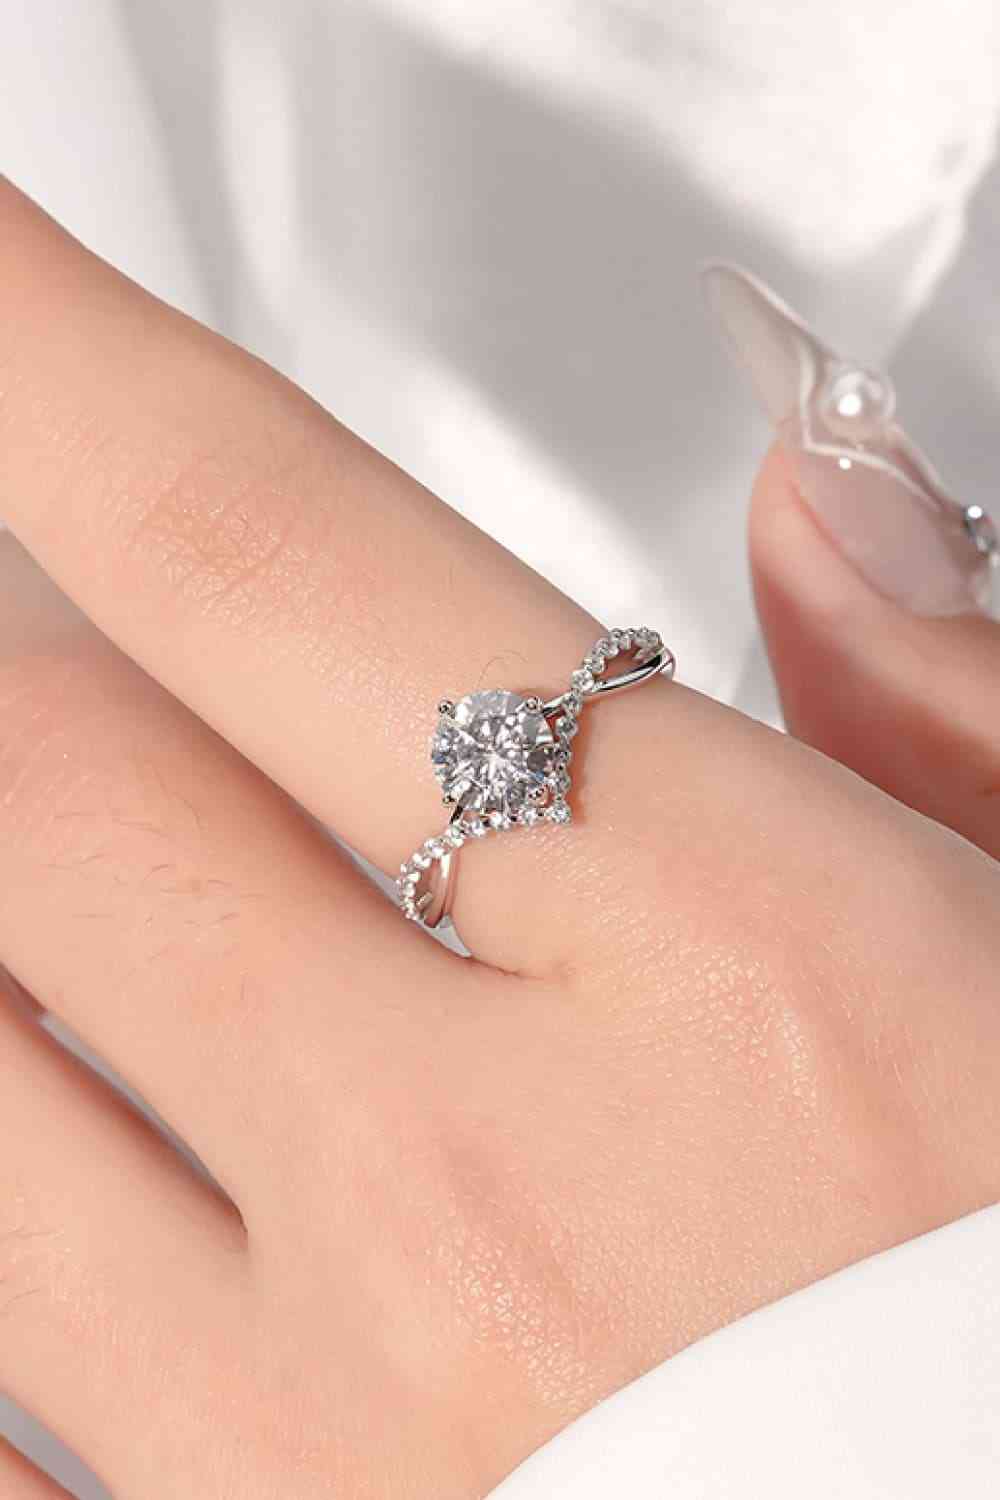 Crown Jewel Engagement Ring (1 Carat)